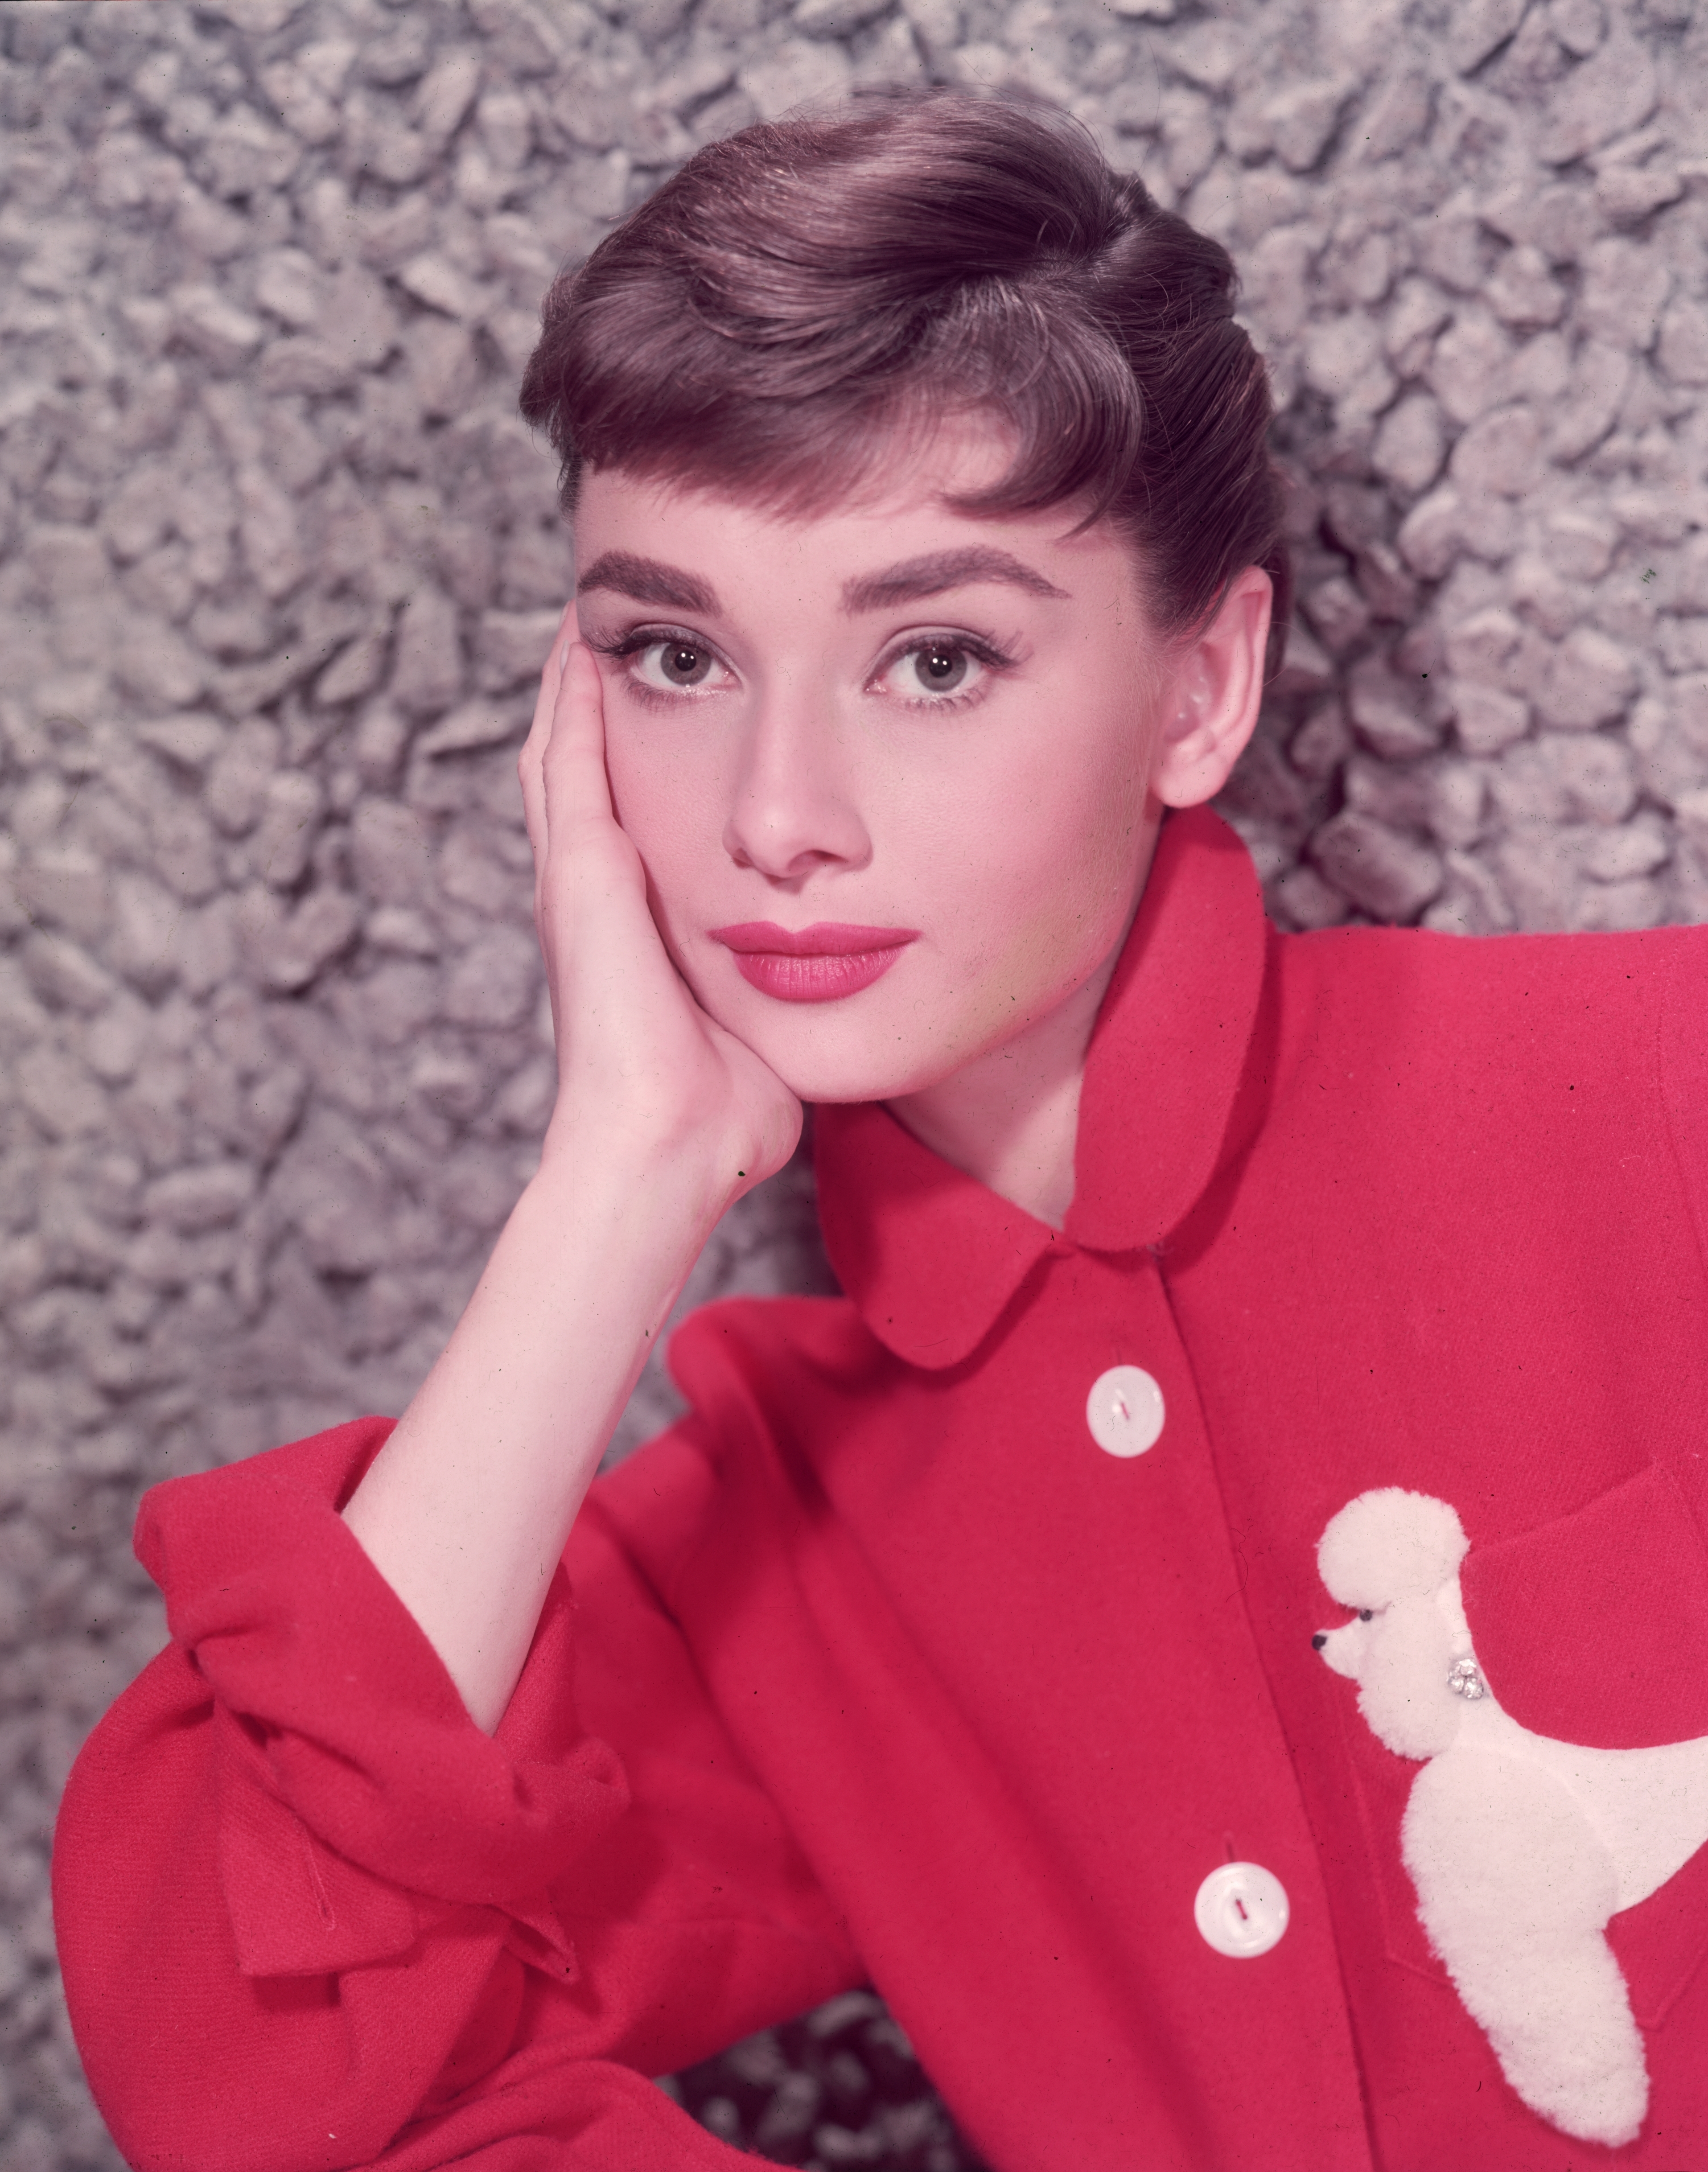 Closeup of Audrey Hepburn